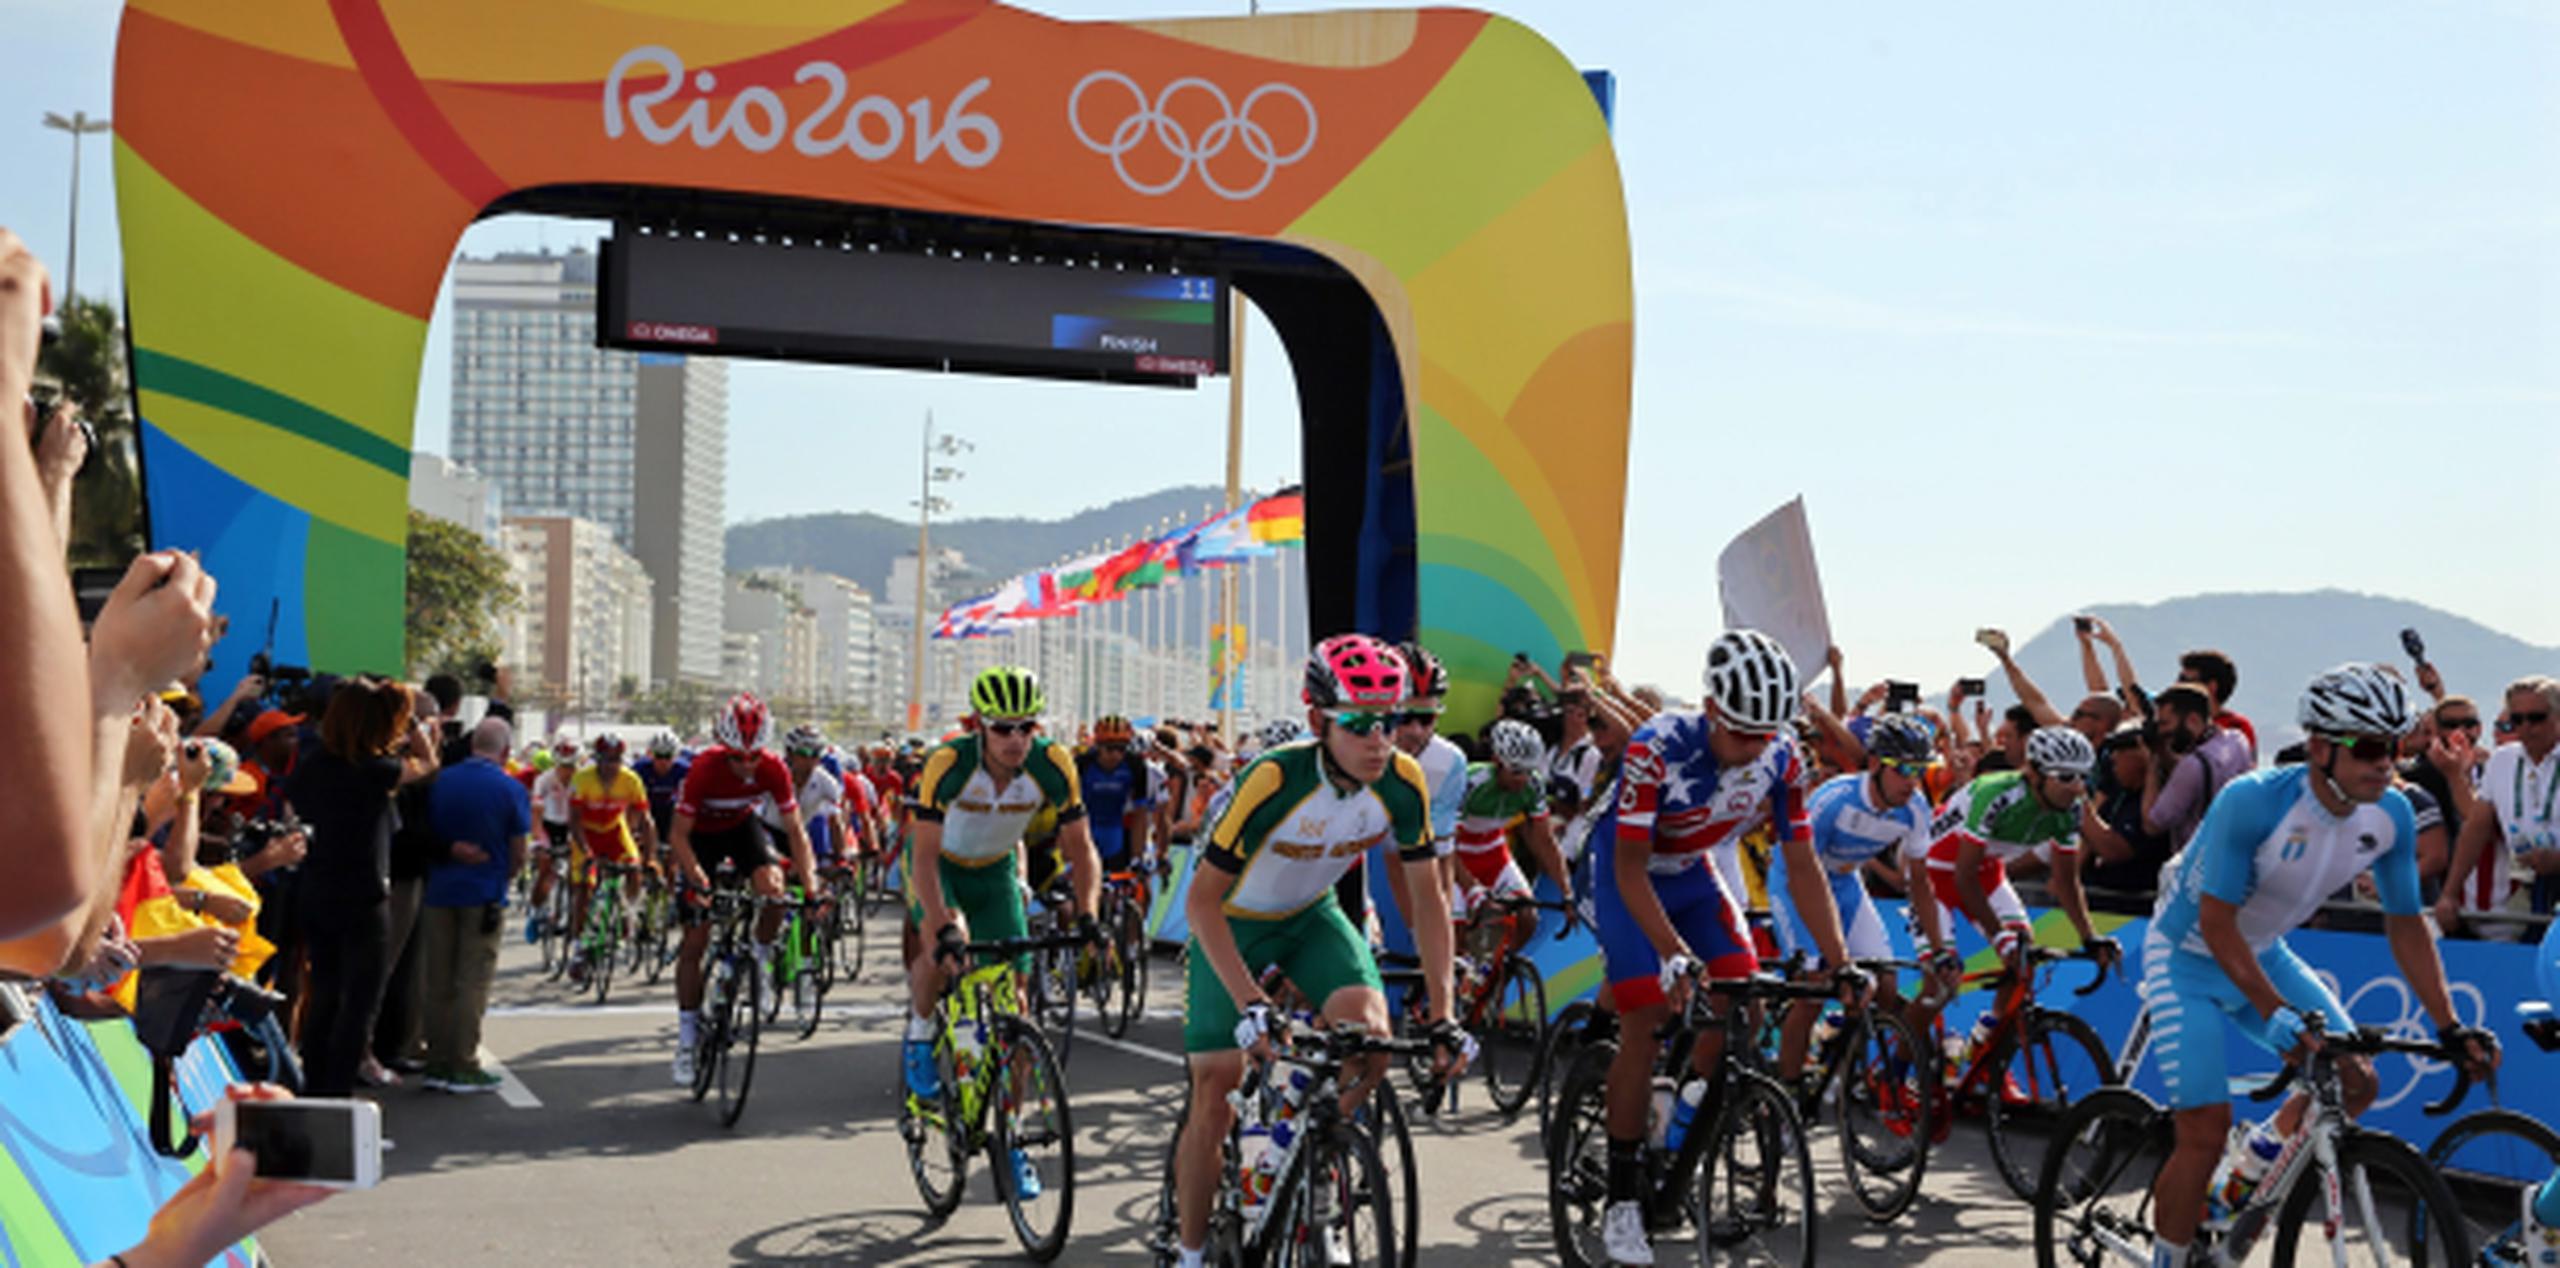 Inicio de la prueba de ciclismo de ruta en los Juegos Olímpicos Río 2016, en Fort Copacabana en Río de Janeiro. EFE/ALEJANDRO ERNESTO